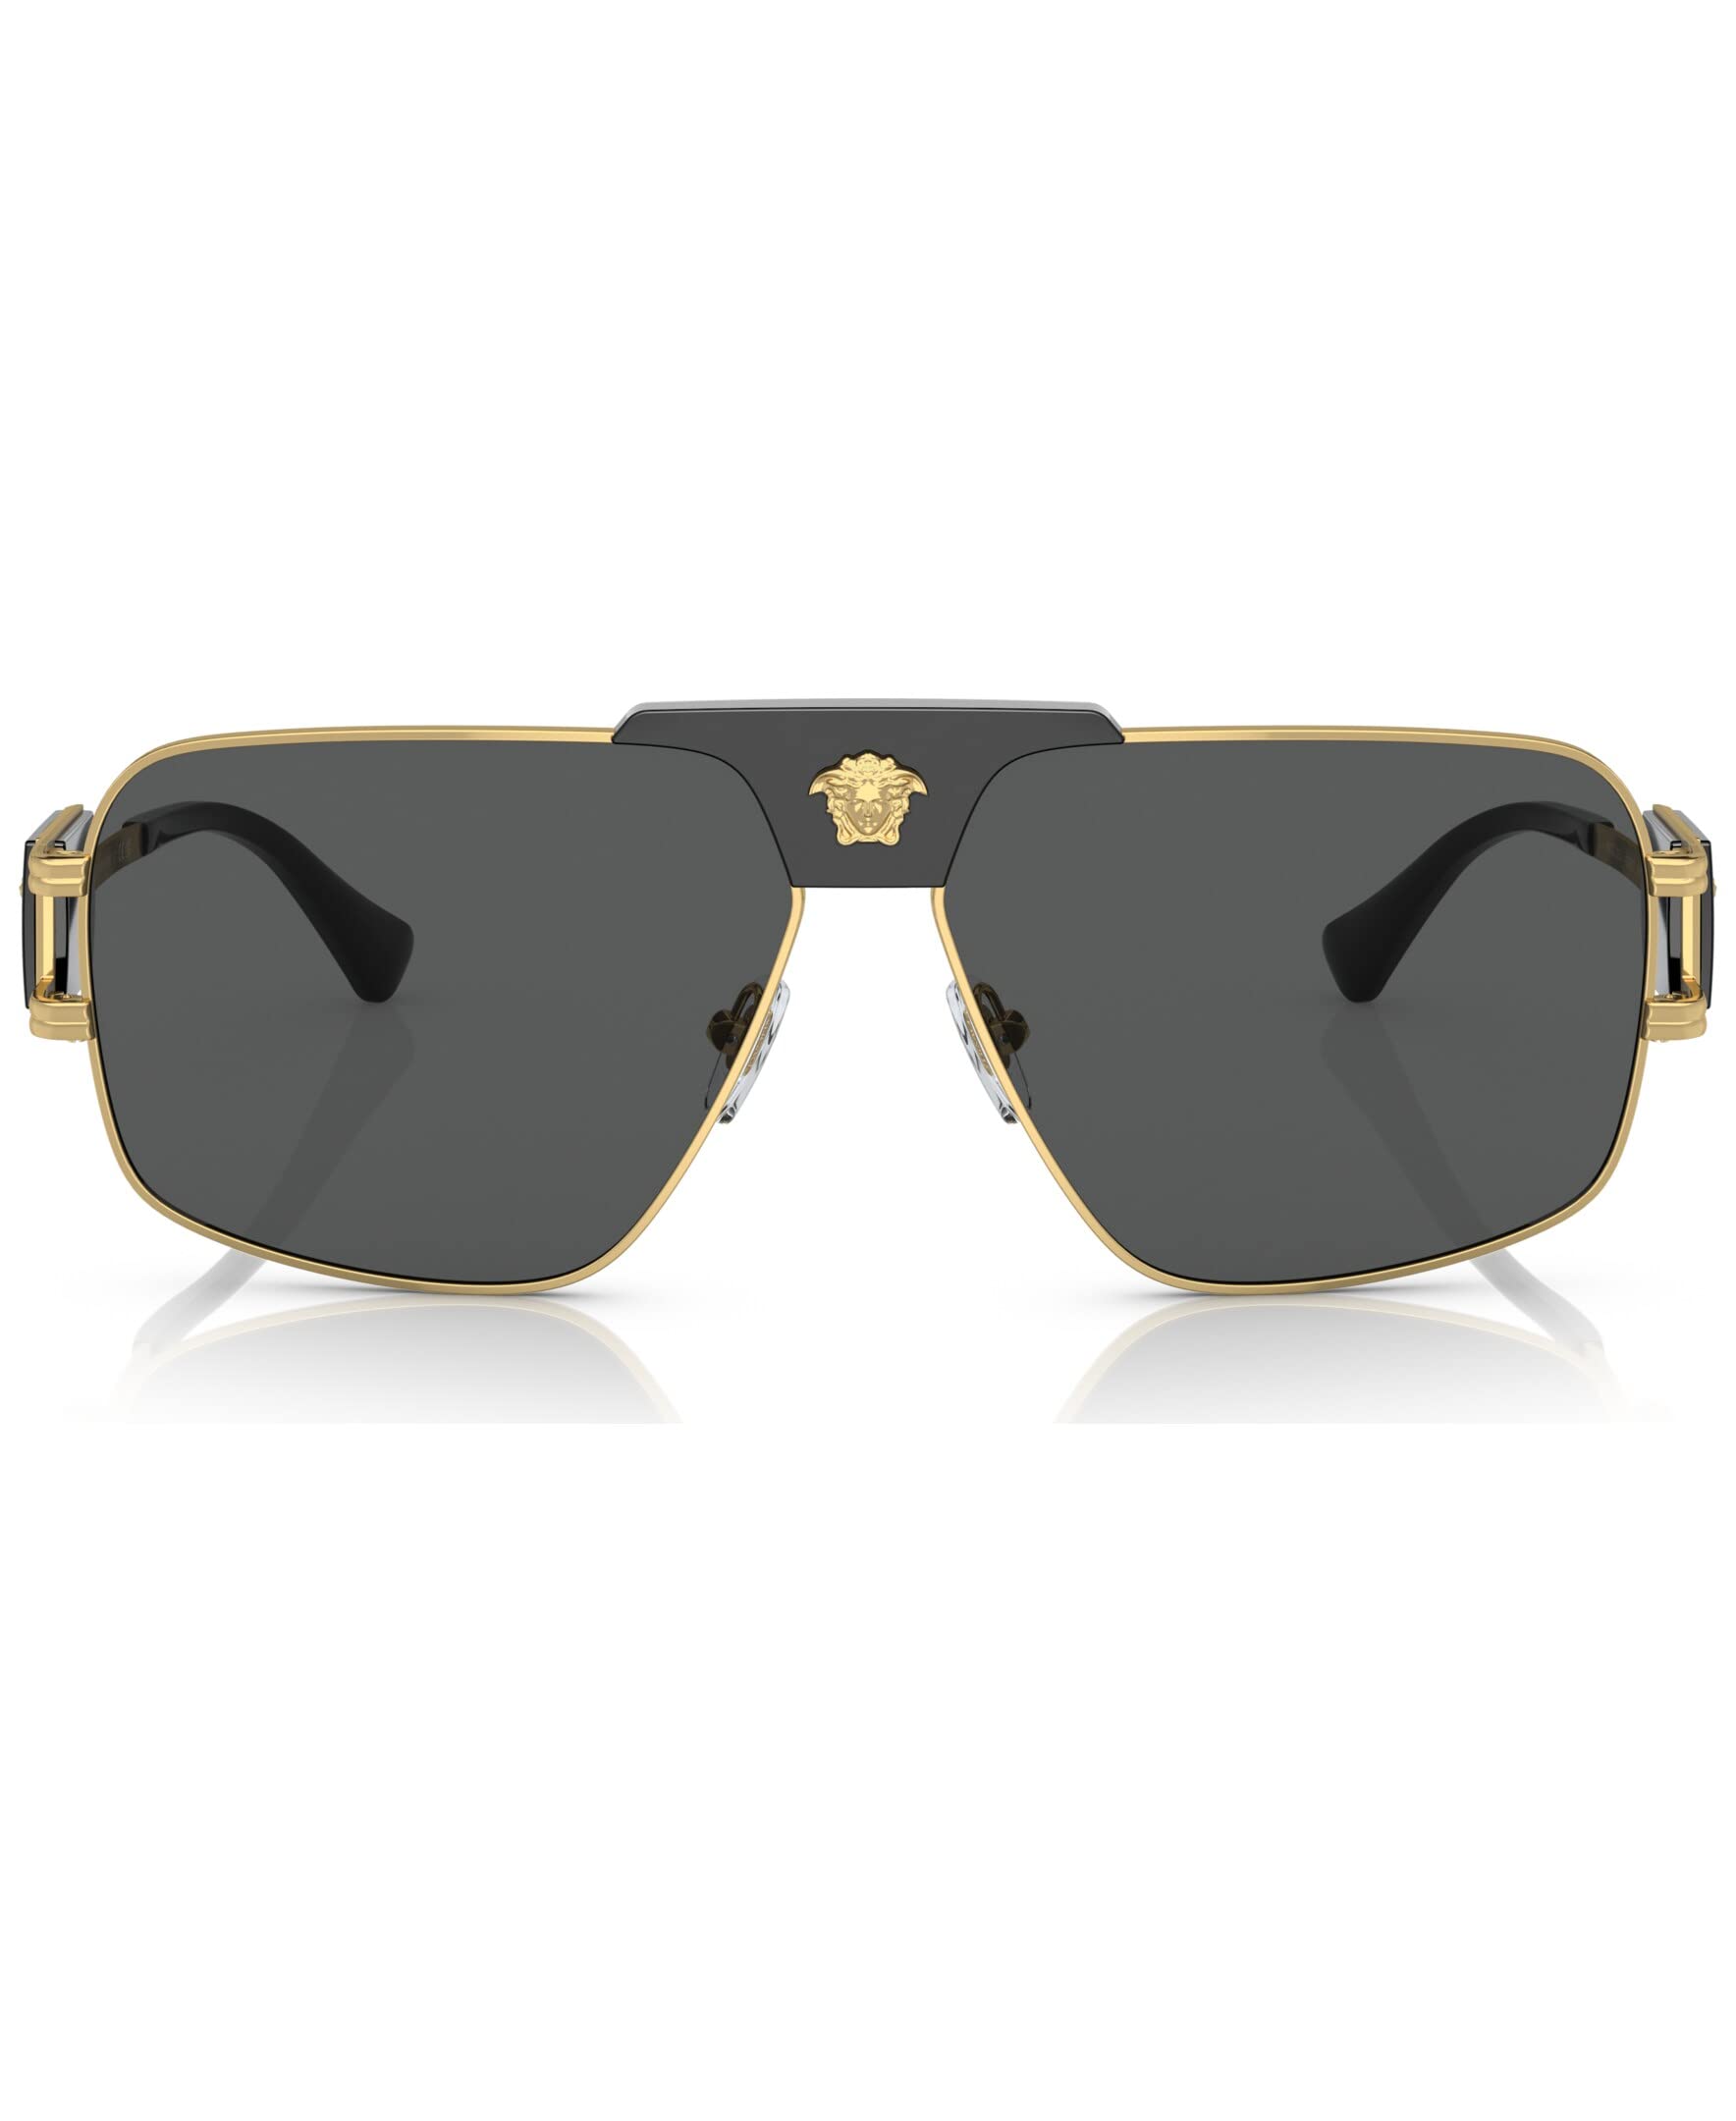 Versace Man Sunglasses Gunmetal Frame, Green Lenses, 63MM